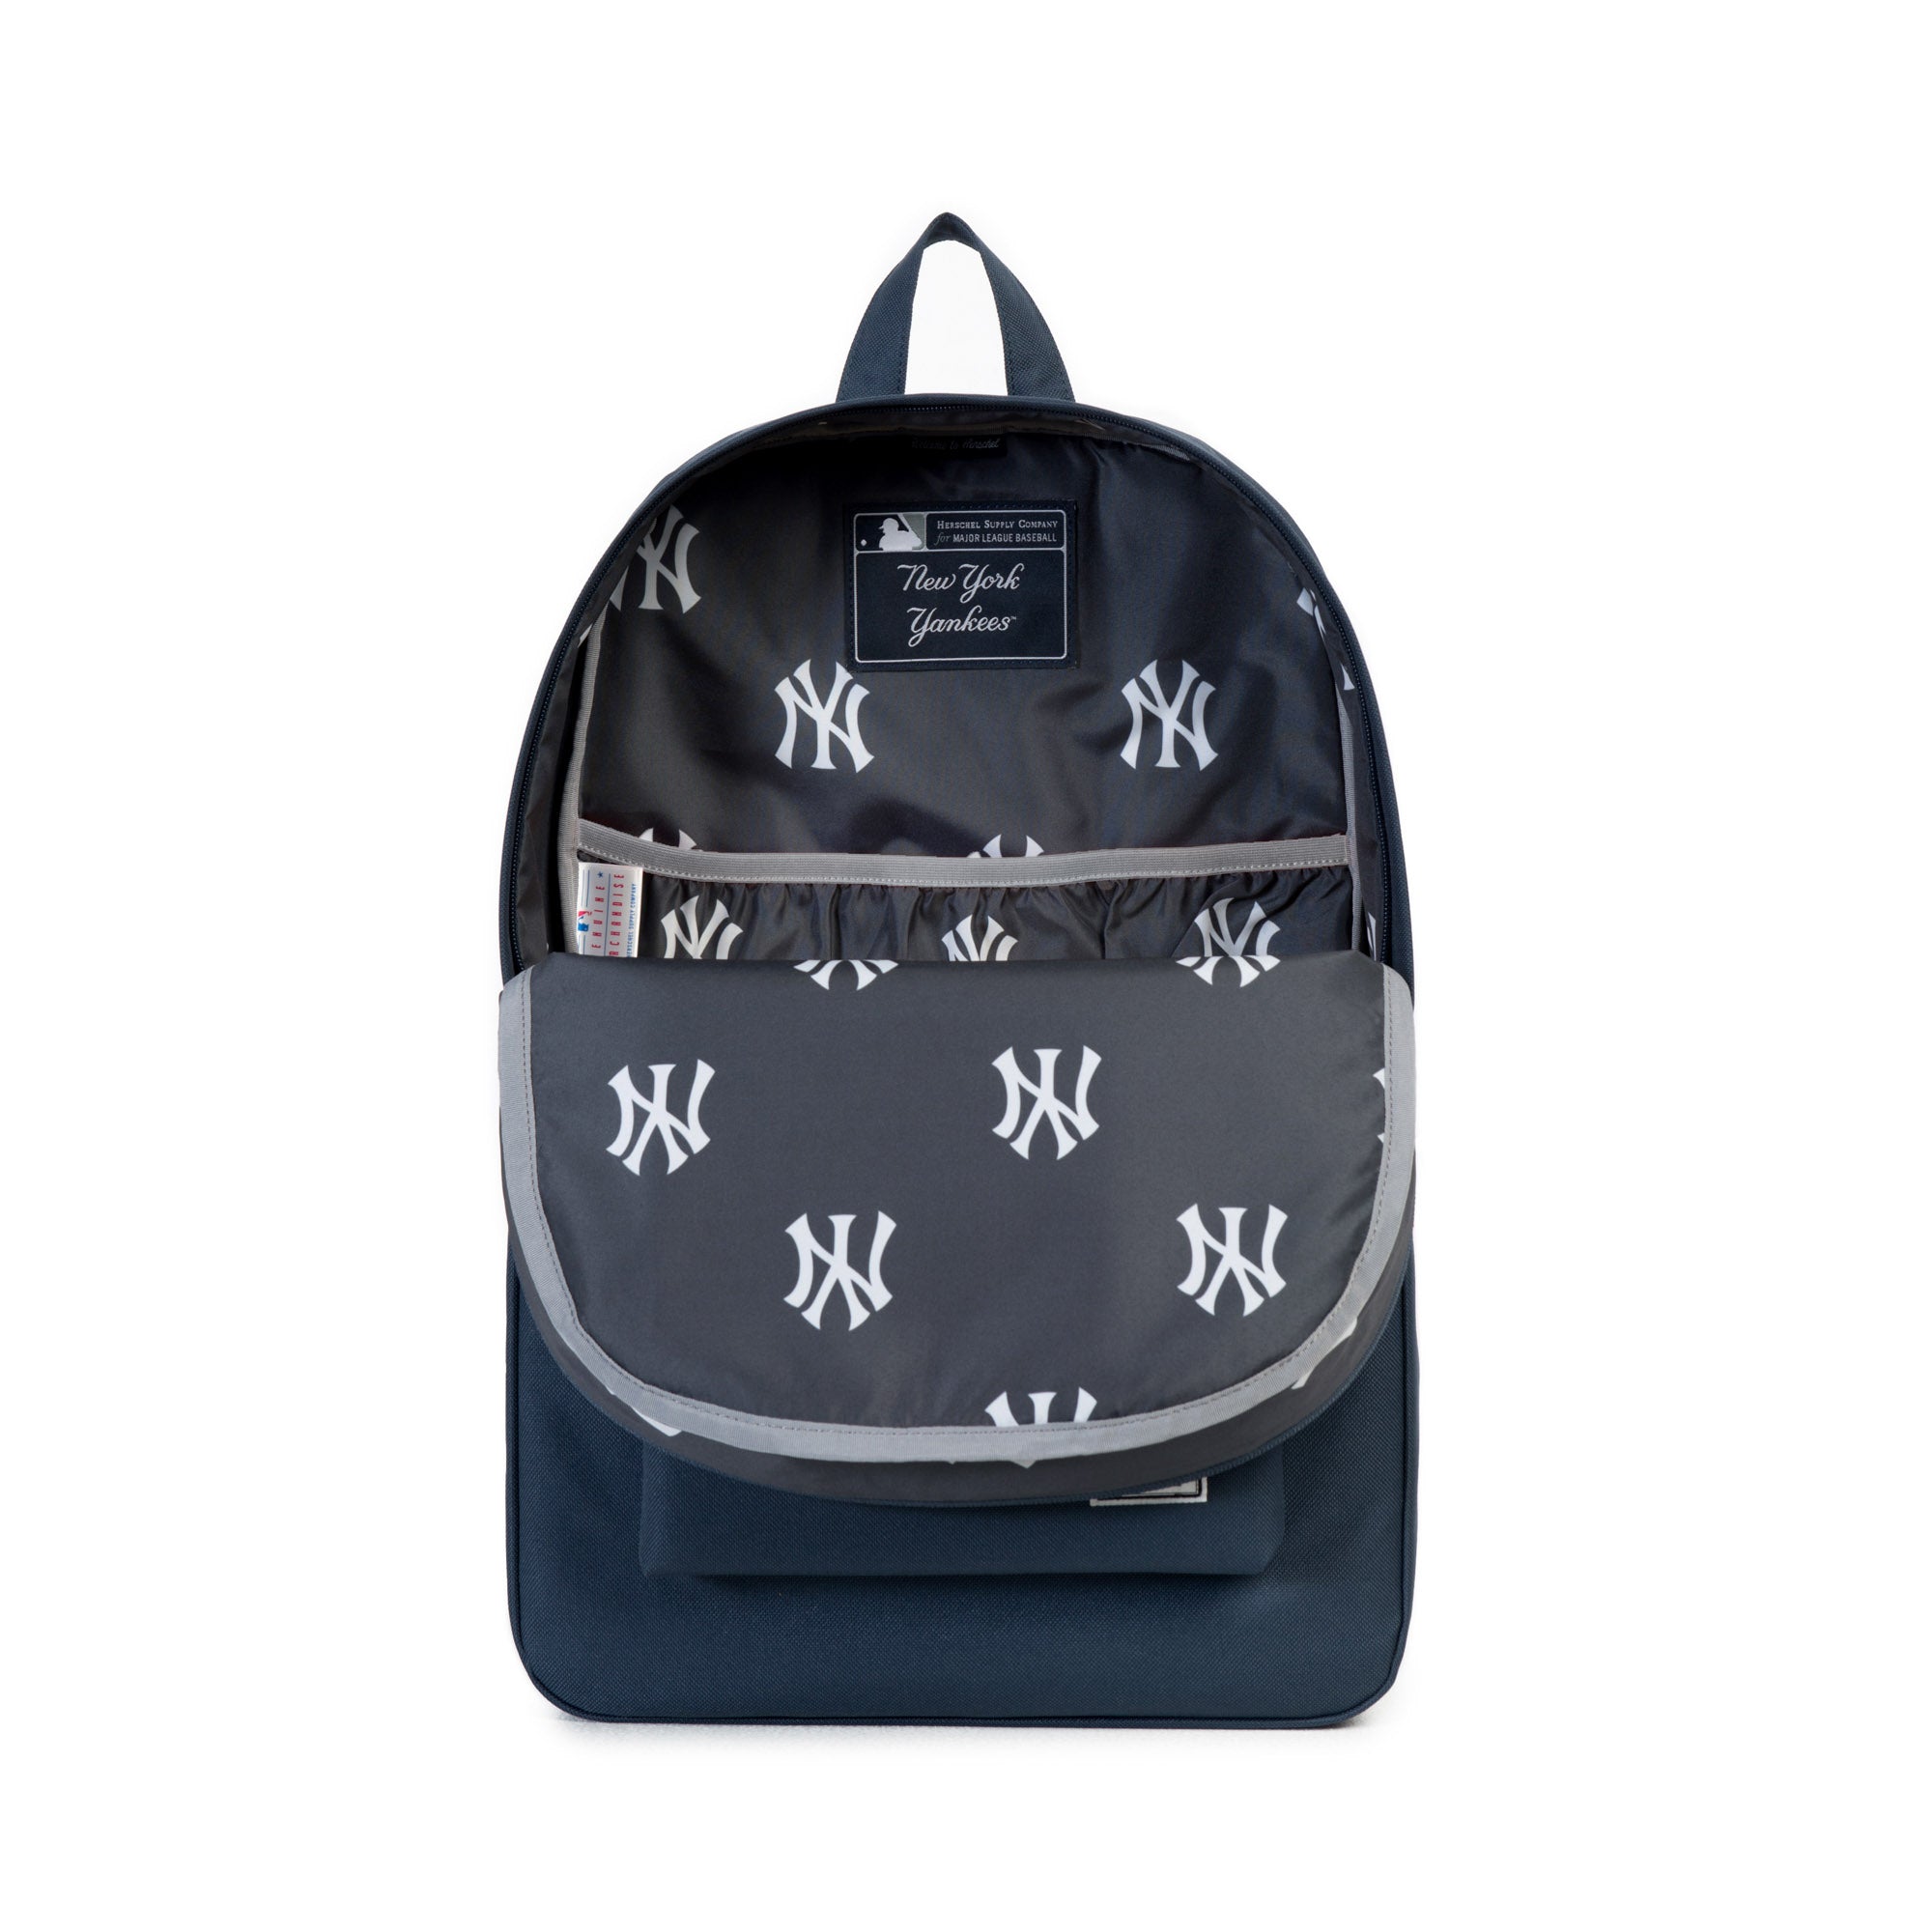 Major League Baseball Original New Yorkes Backpack / Backpack. Black and  white. Double inner pocket.